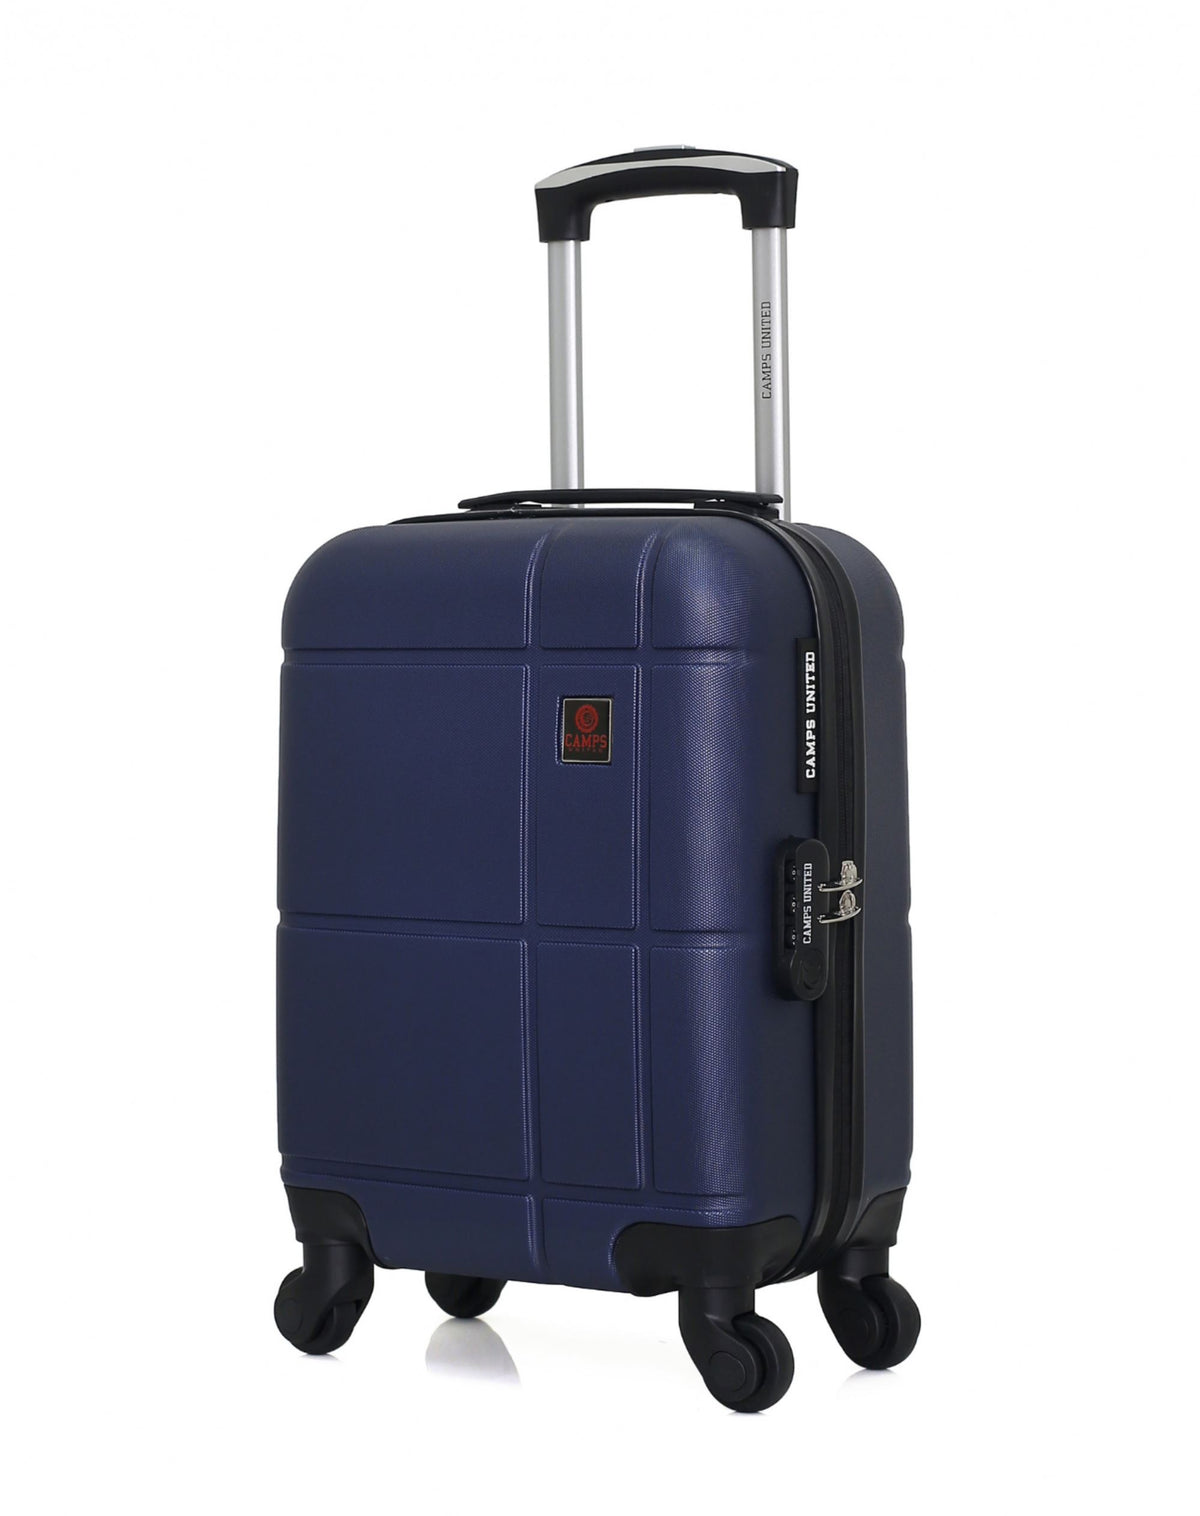 Set de 3 valises Mykonos - Valise cabine, grande valise